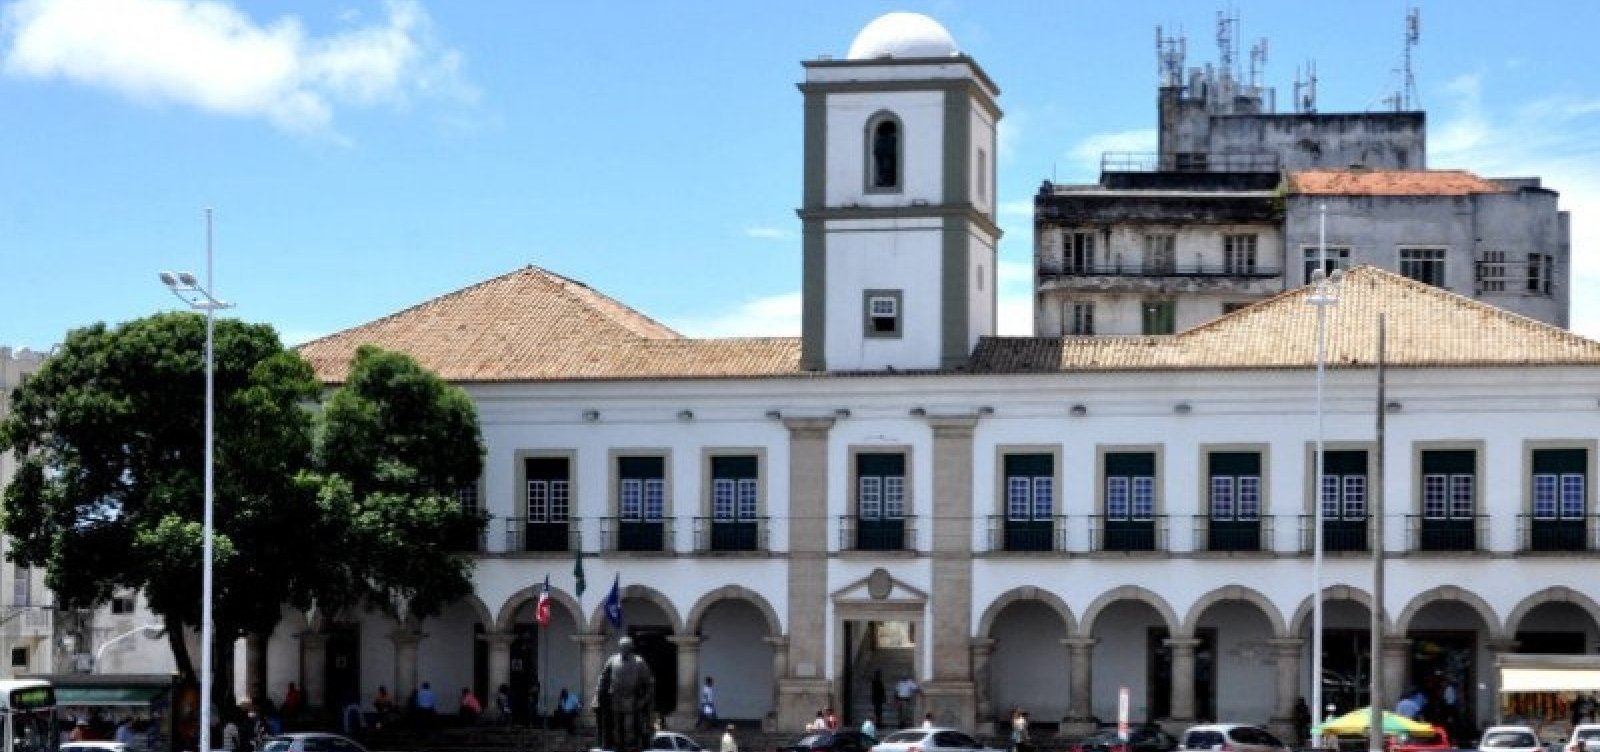 Plano de Cultura em Salvador enfrenta resistência por incluir cultura LGBT, diz relator